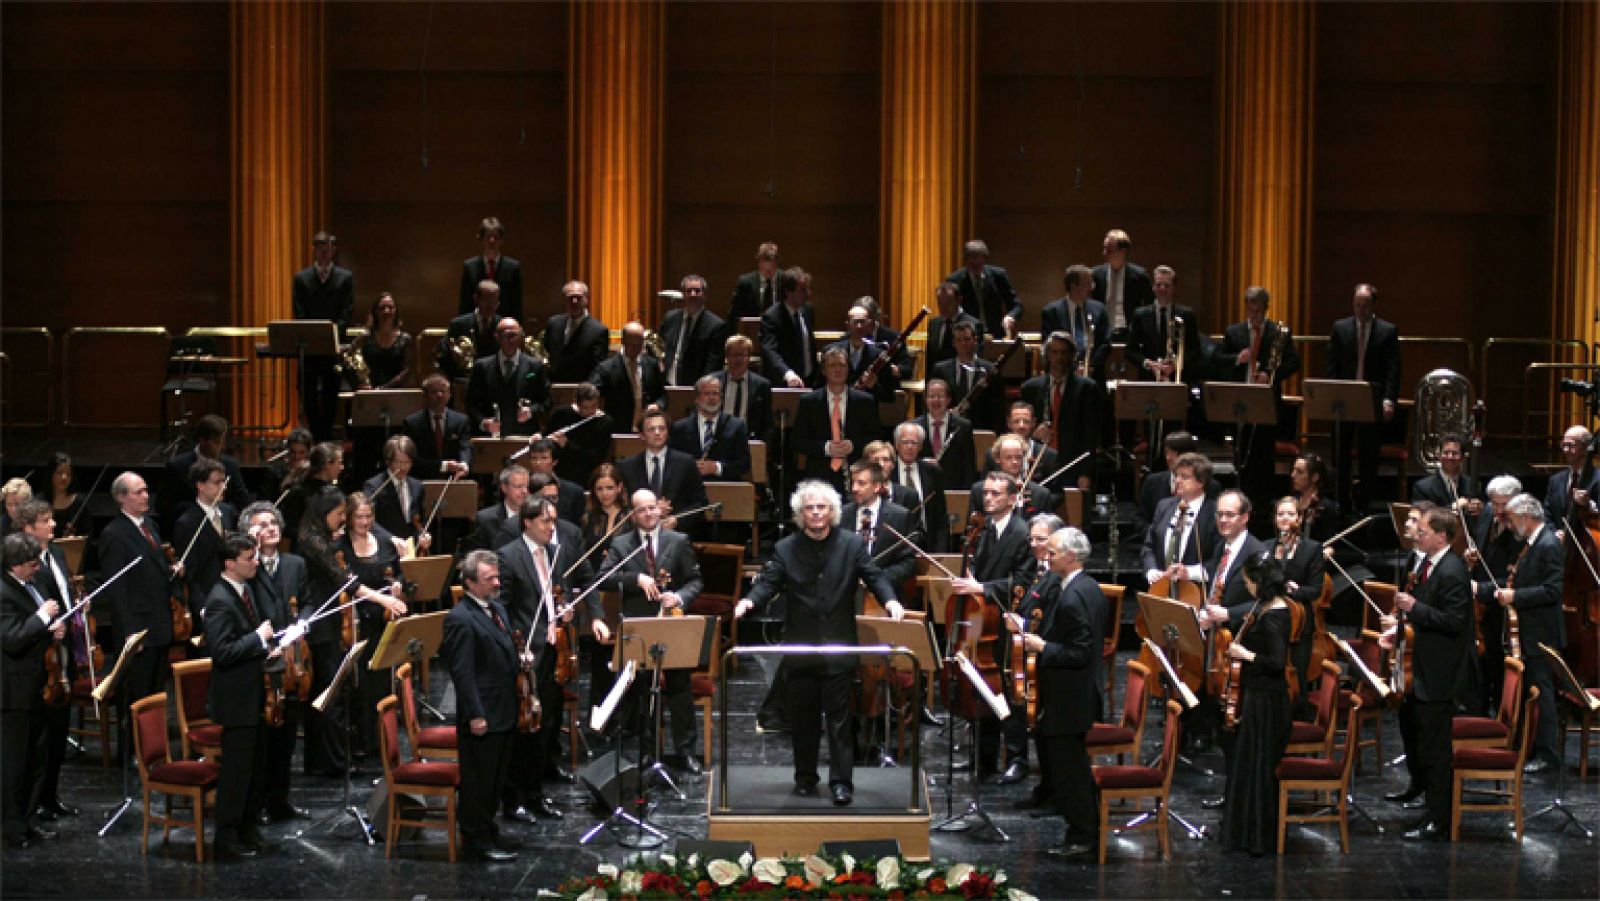 La Filarmónica de Berlín interpreta "Oda a la alegría" - Ver ahora